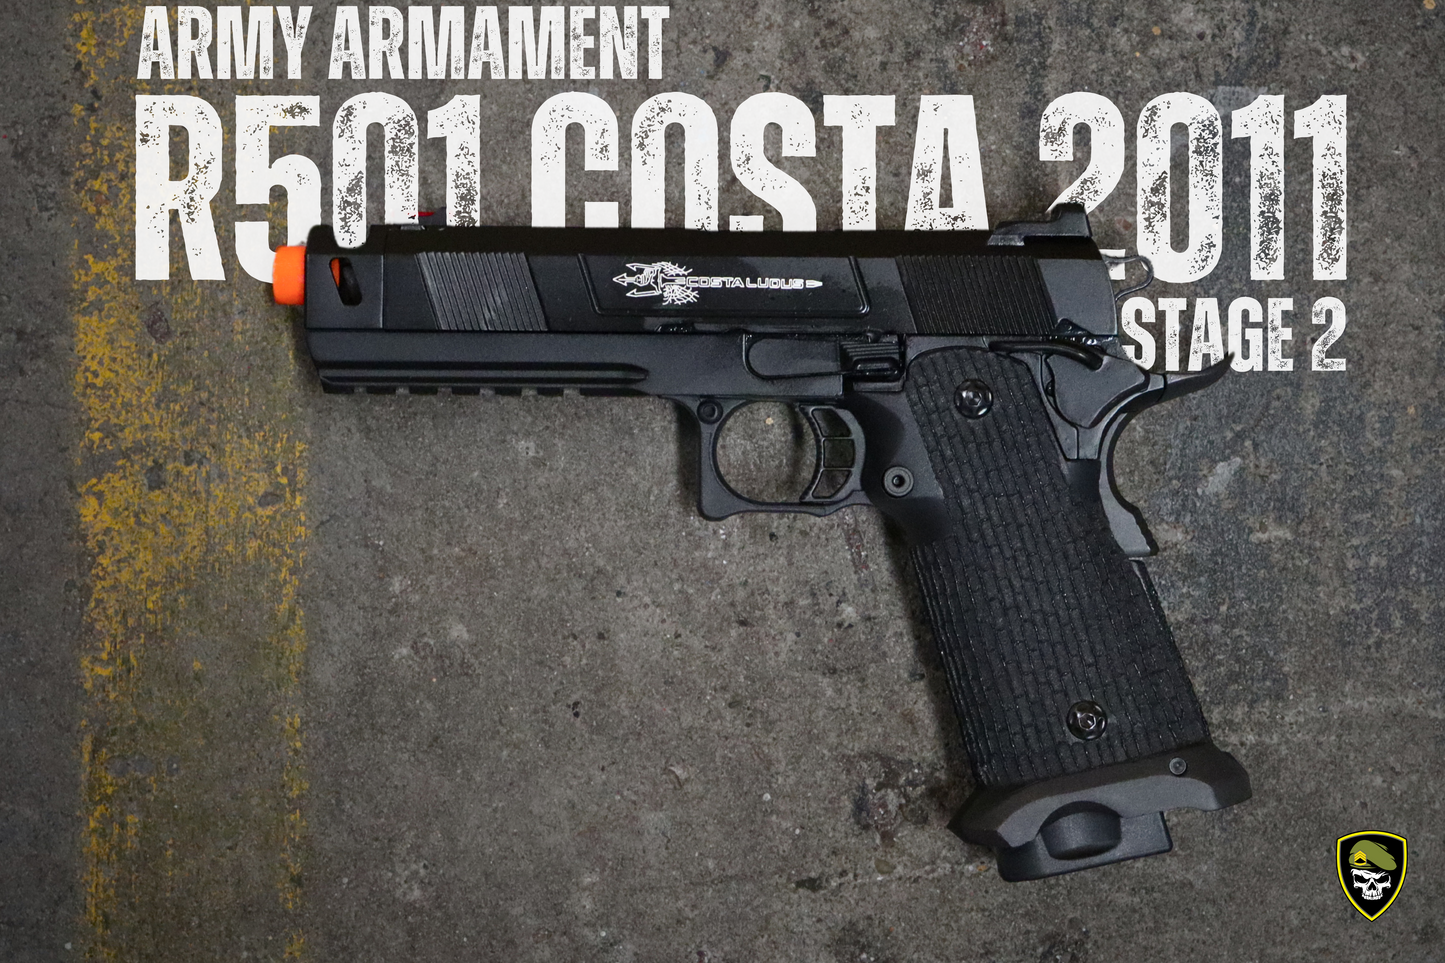 
                  
                    Army Armament Stage 2 R501 STI (COSTA 2011) Gel Blaster Black
                  
                